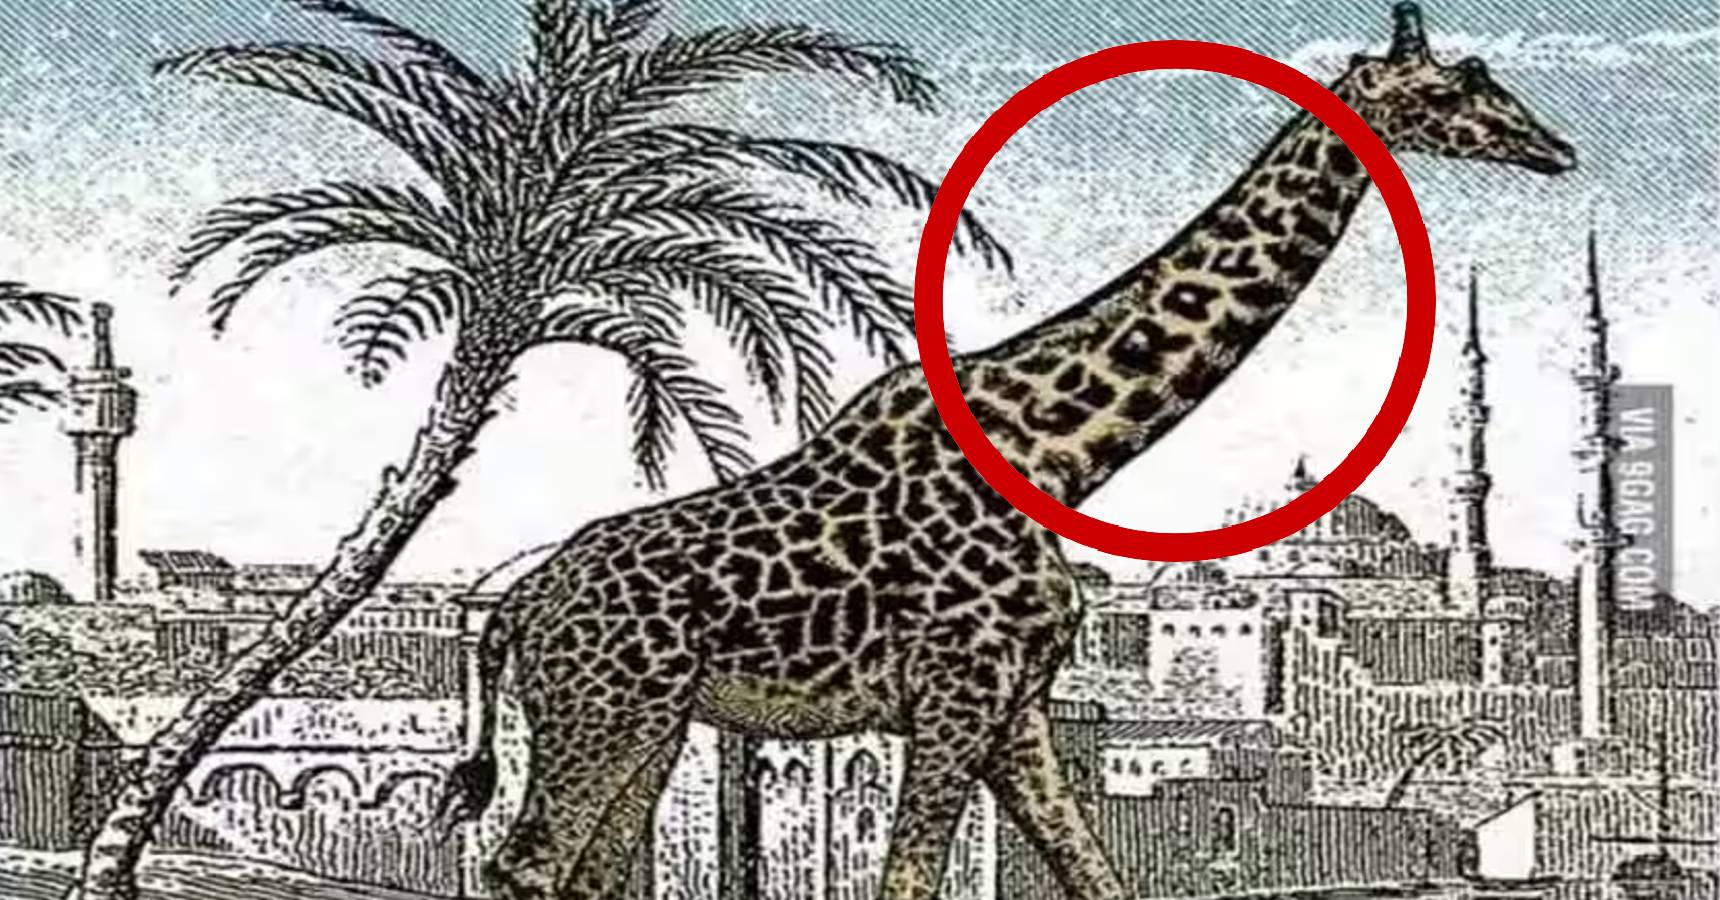 Optical illusion, Optical illusion giraffe 